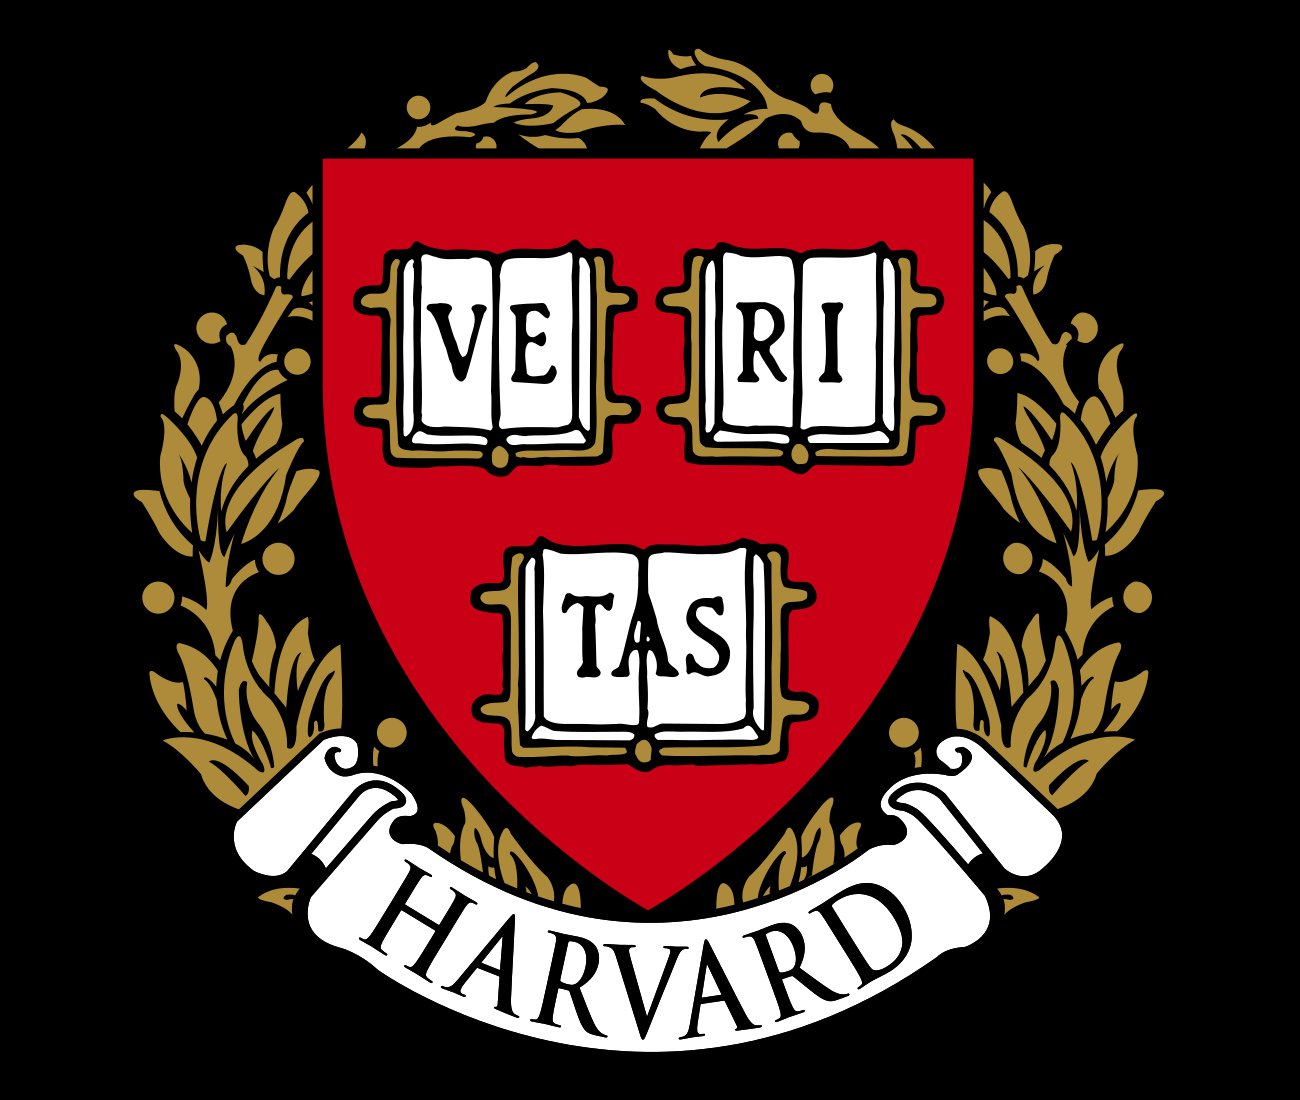 Harvard University Official Logo